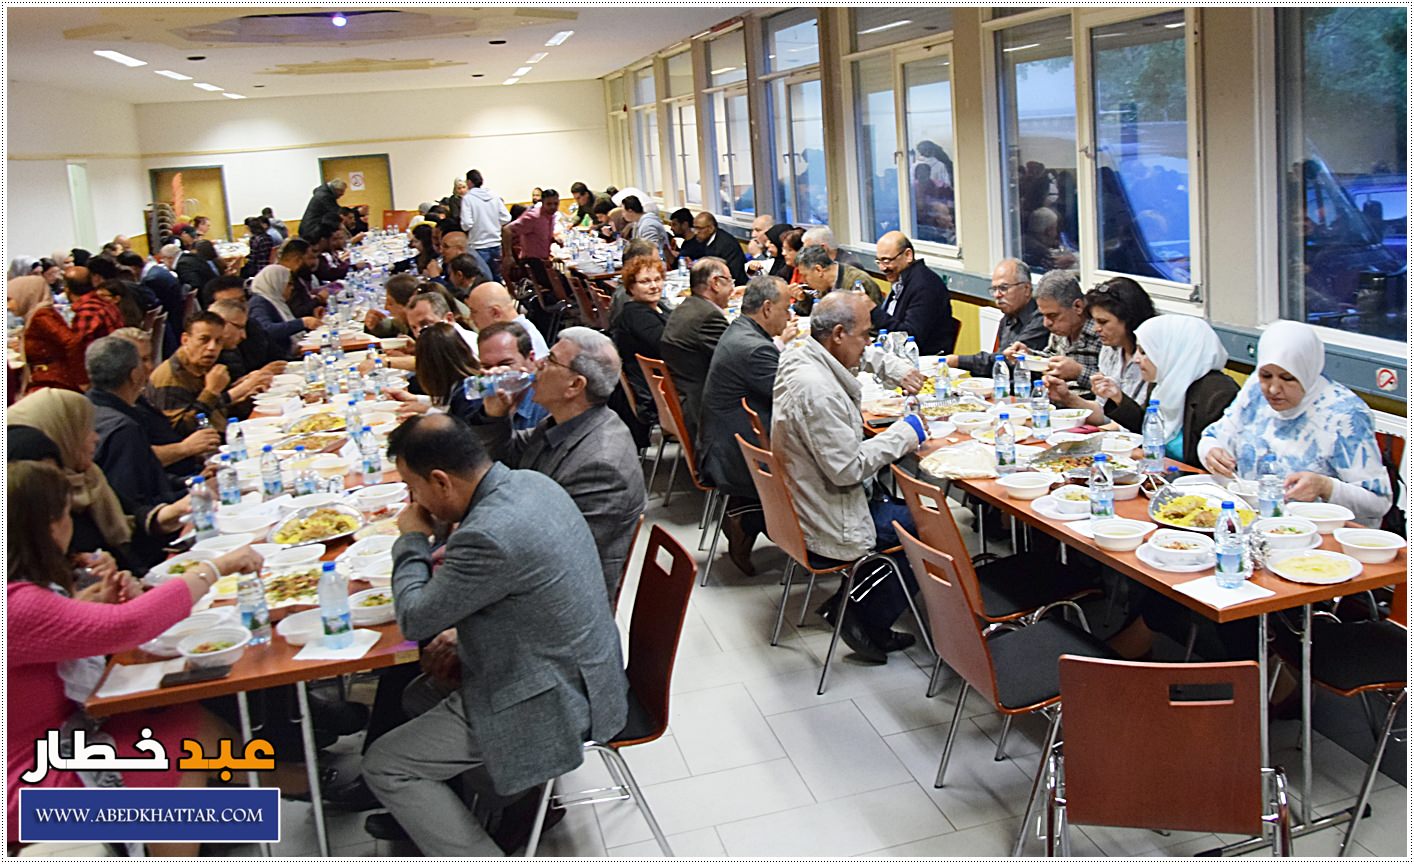 البيت الفلسطيني يقيم مأدبة إفطار جماعي في برلين